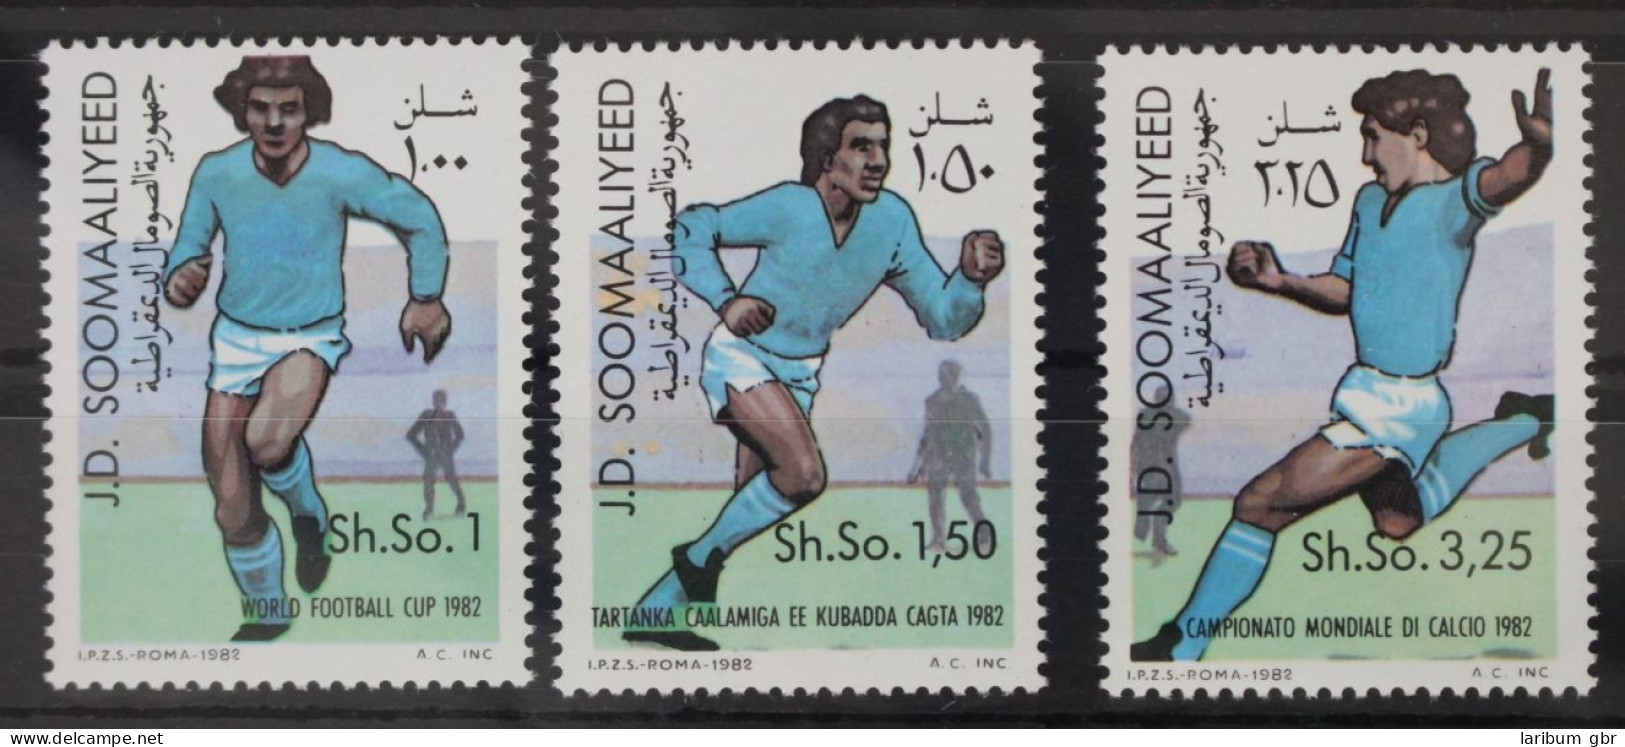 Somalia 315-317 Postfrisch Fußball - Weltmeisterschaft #WW699 - Somalia (1960-...)